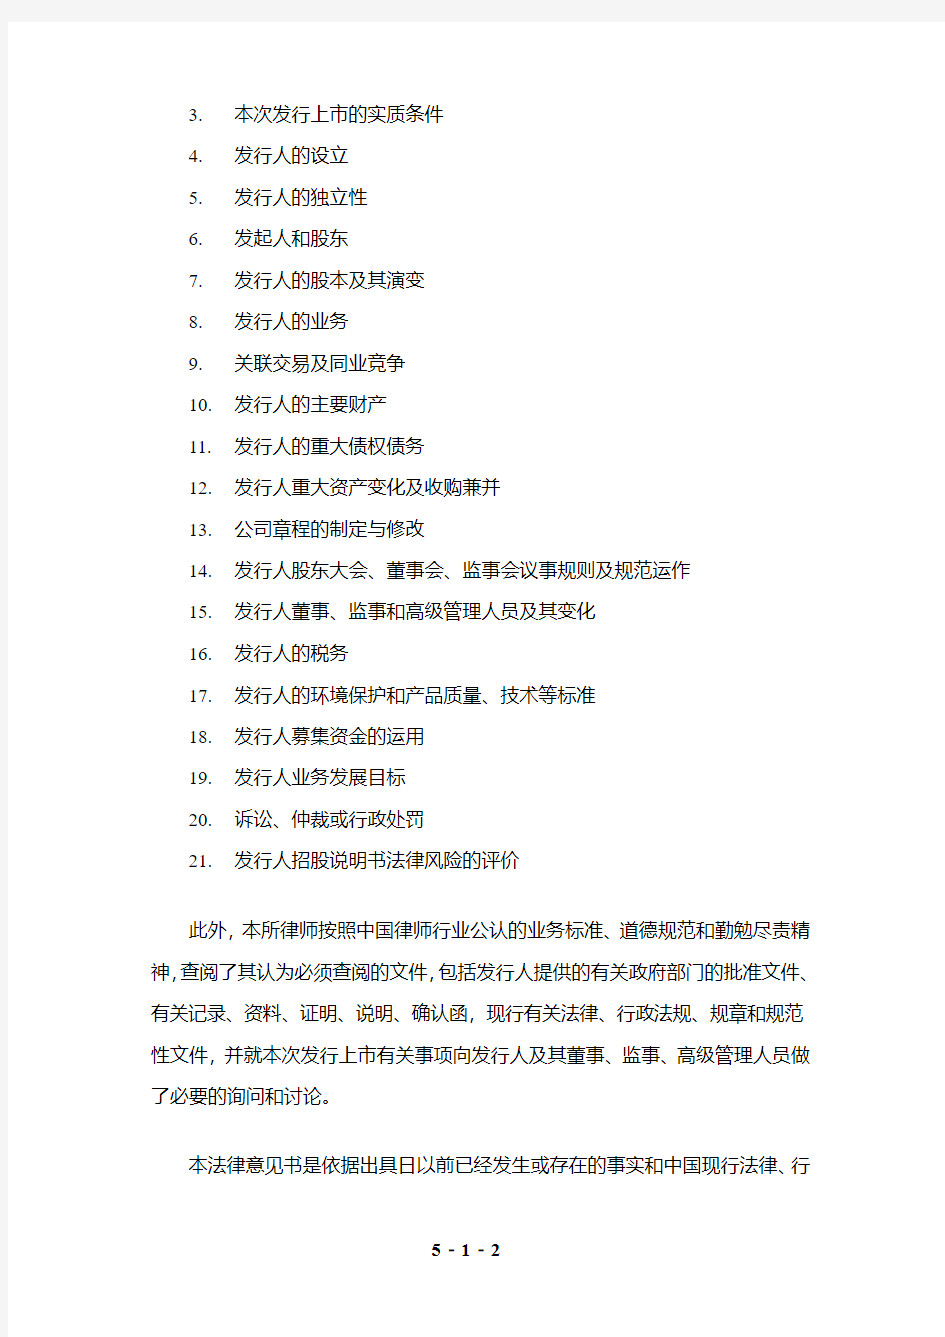 世纪游轮：北京市金杜律师事务所关于公司首次公开发行A股股票并上市的法律意见书 2011-02-11